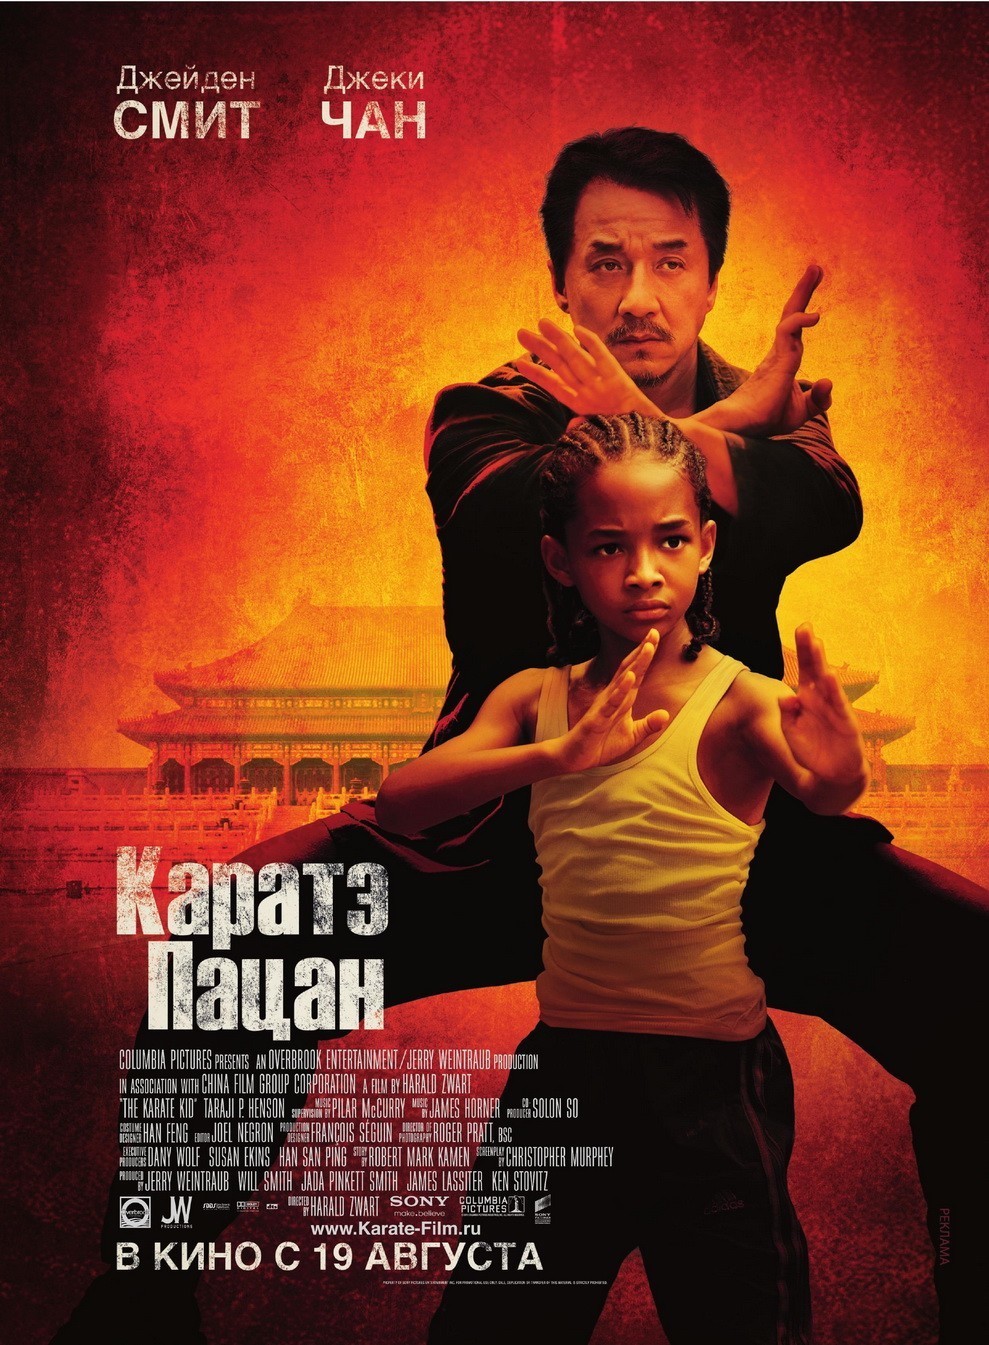 Скачать Каратэ пацан | The Karate Kid (2010) DVDRip 1400MB бесплатно